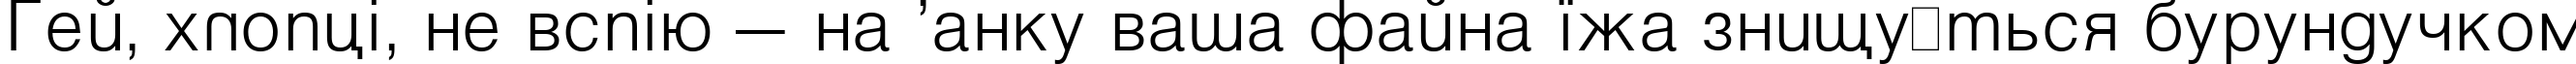 Пример написания шрифтом Vanta Light Plain:001.001 текста на украинском